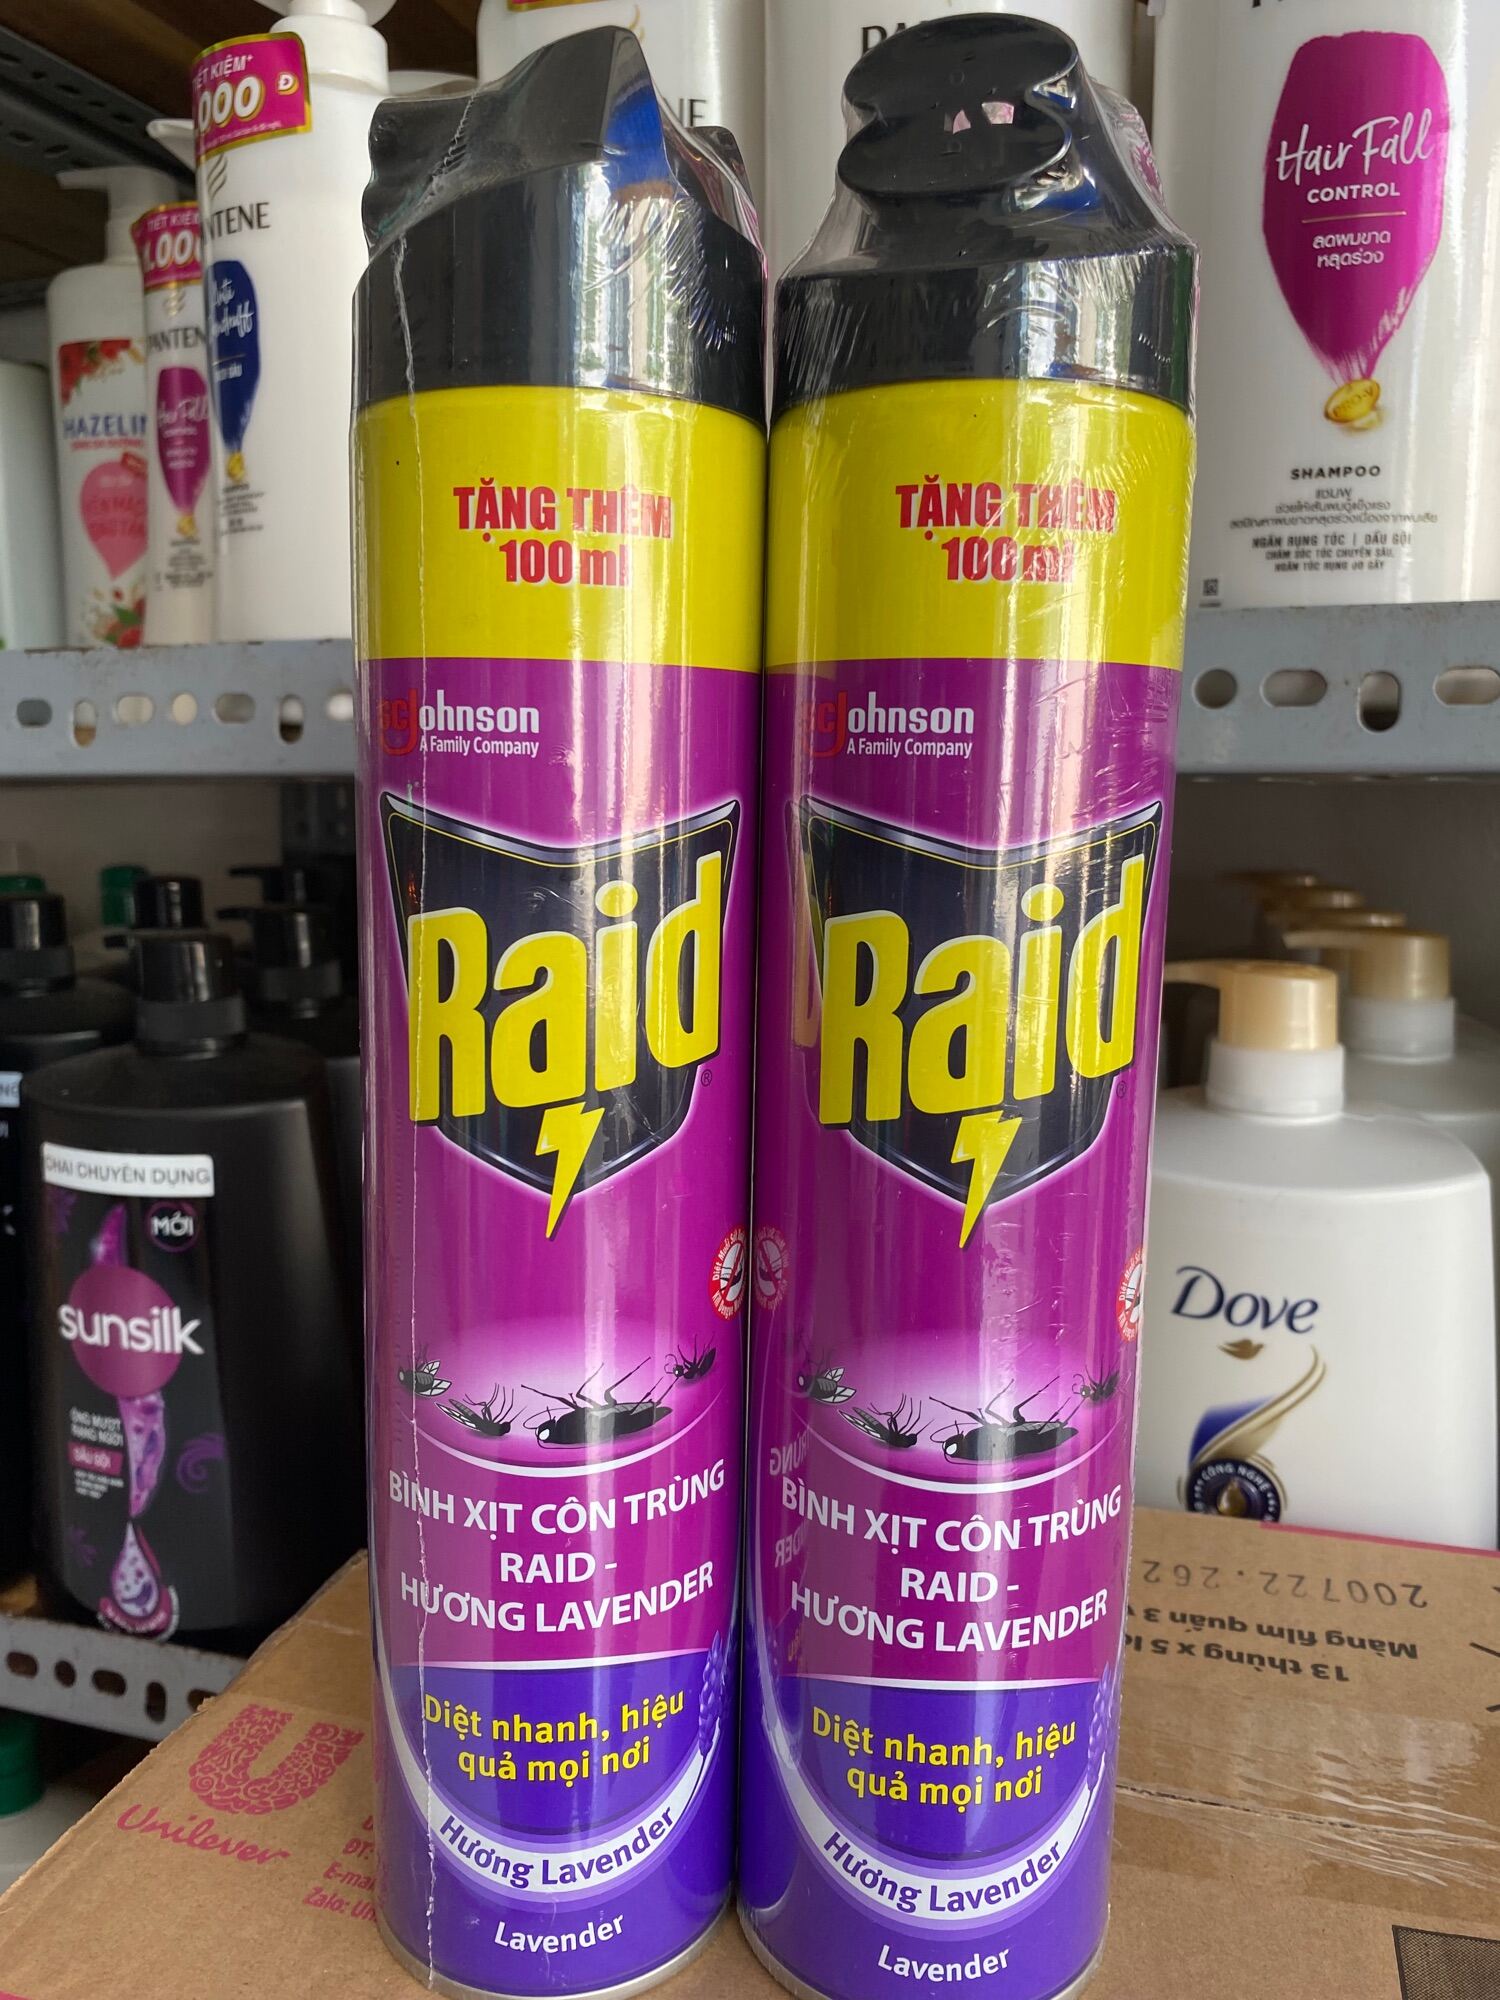 Bình xịt côn trùng raid- hương lavender 600ml tặng thêm 100ml - ảnh sản phẩm 1